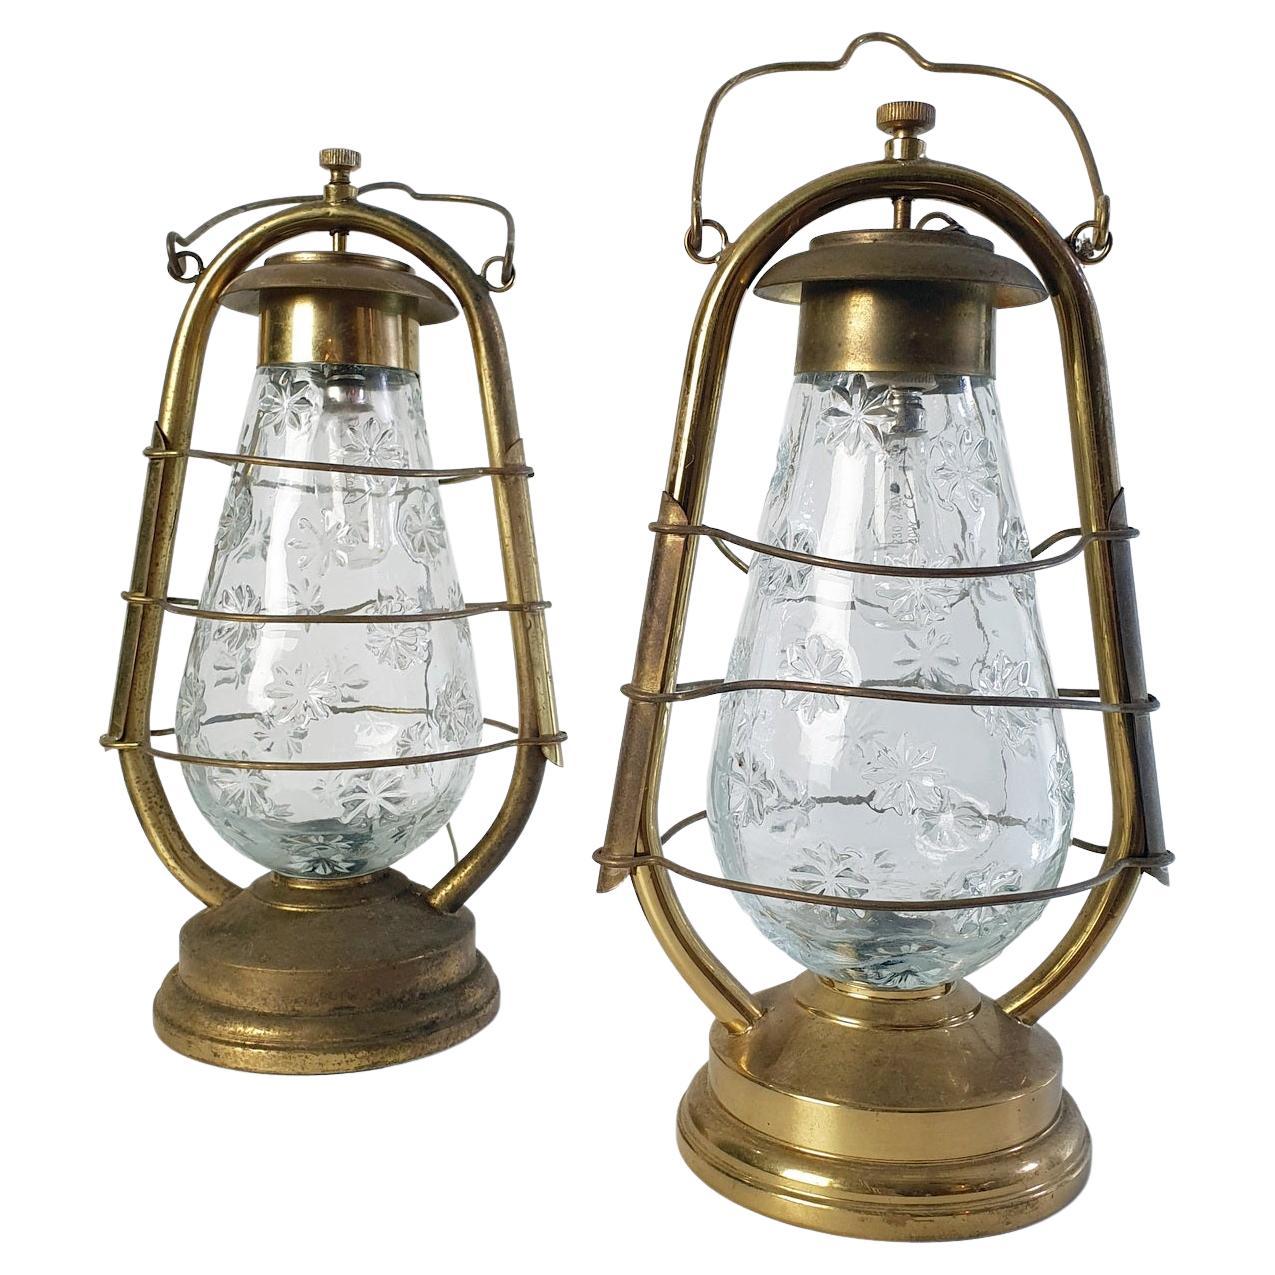 Une paire de lampes italiennes en forme de lanterne d'ouragan. Les lampes peuvent être utilisées sur la table ou être suspendues au mur ou au plafond. En parfait état de marche. Fonctionne avec les ampoules E14.